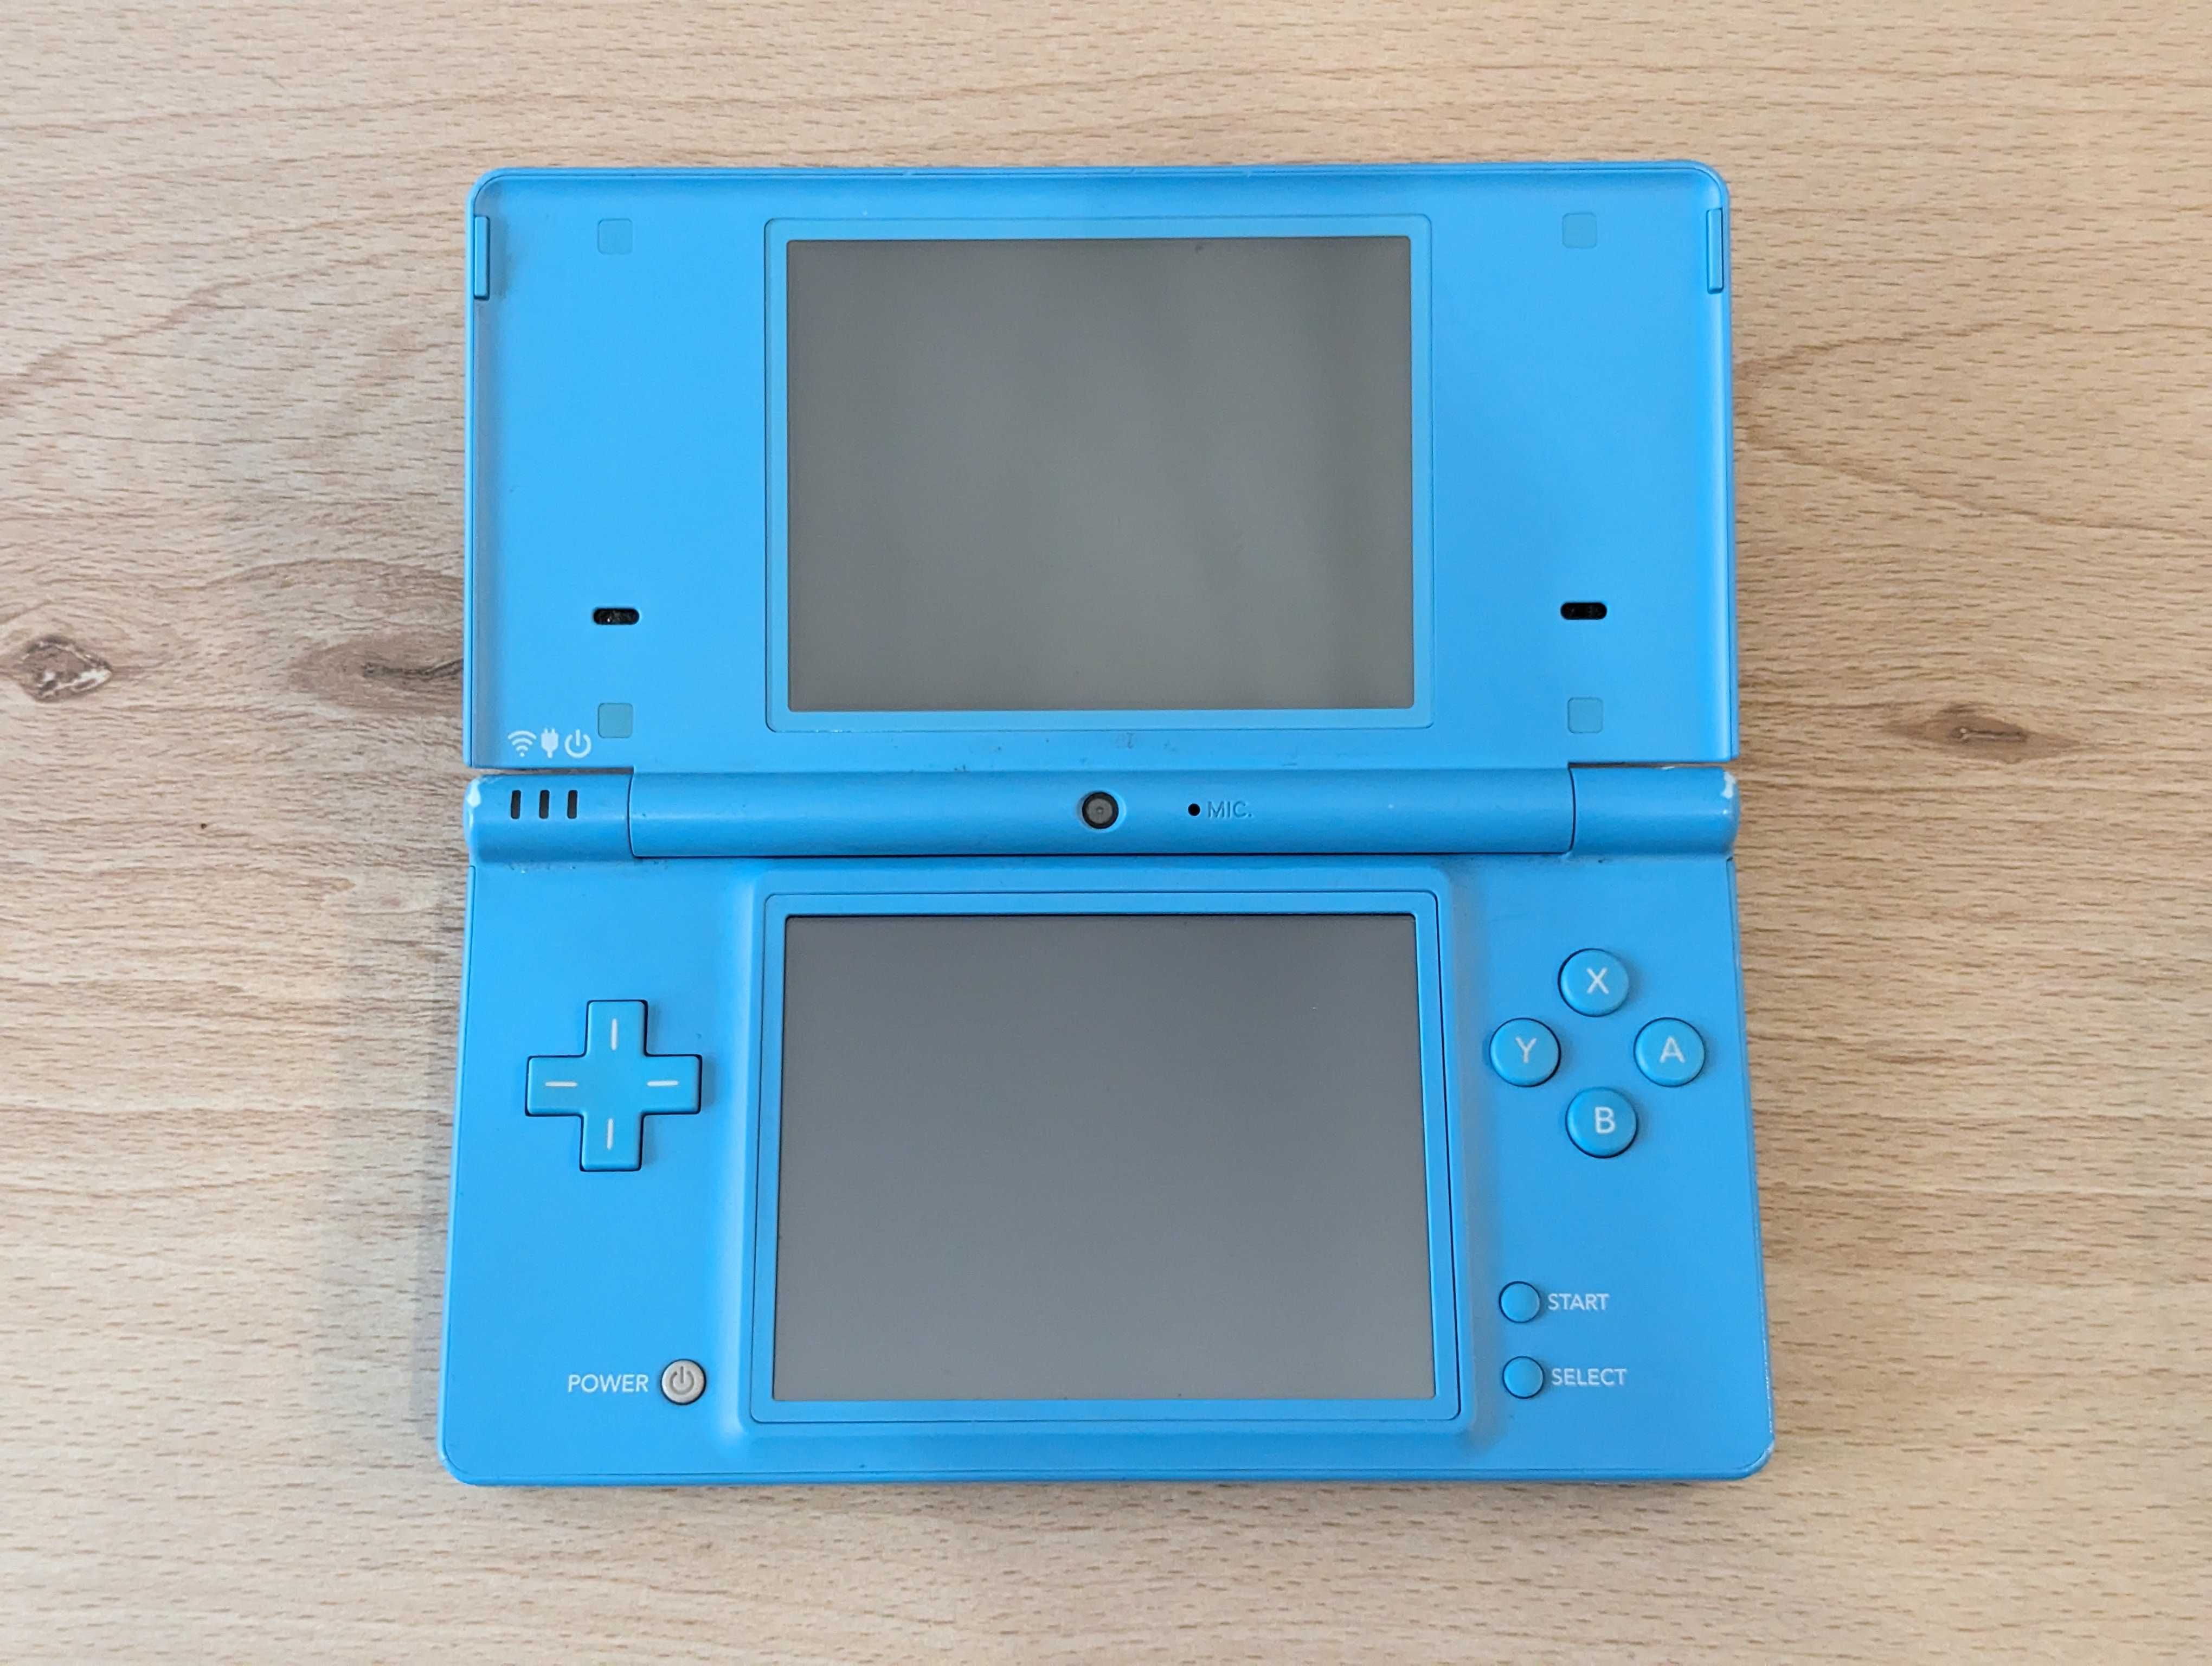 Consola Nintendo DSi modata